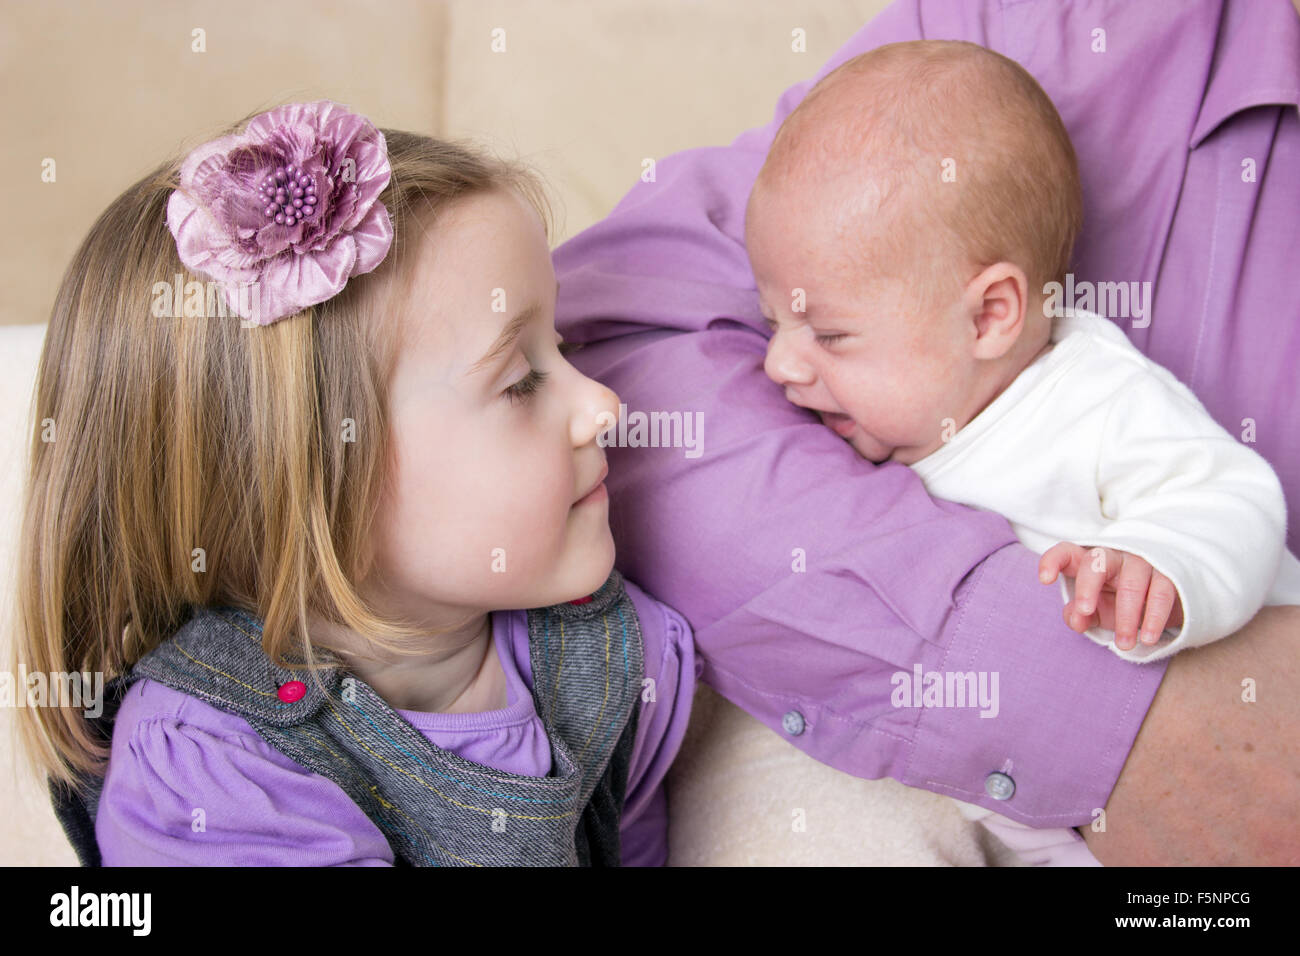 Bébé nouveau-né dans les bras de son père et petite fille Banque D'Images